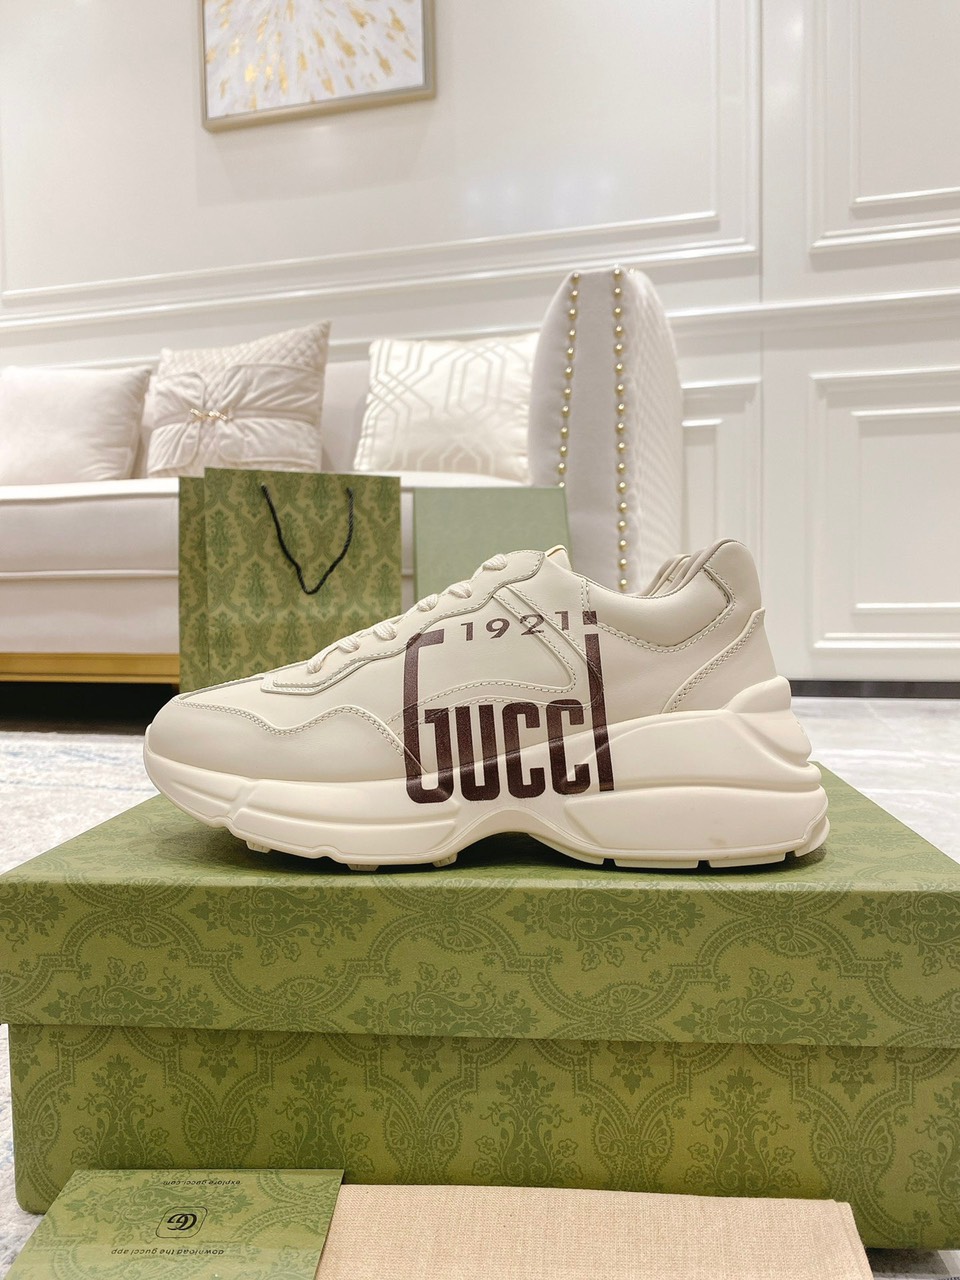 Tổng Hợp Các Mẫu Giày Gucci Sneaker Màu Trắng In Họa Tiết Hoạt Hình